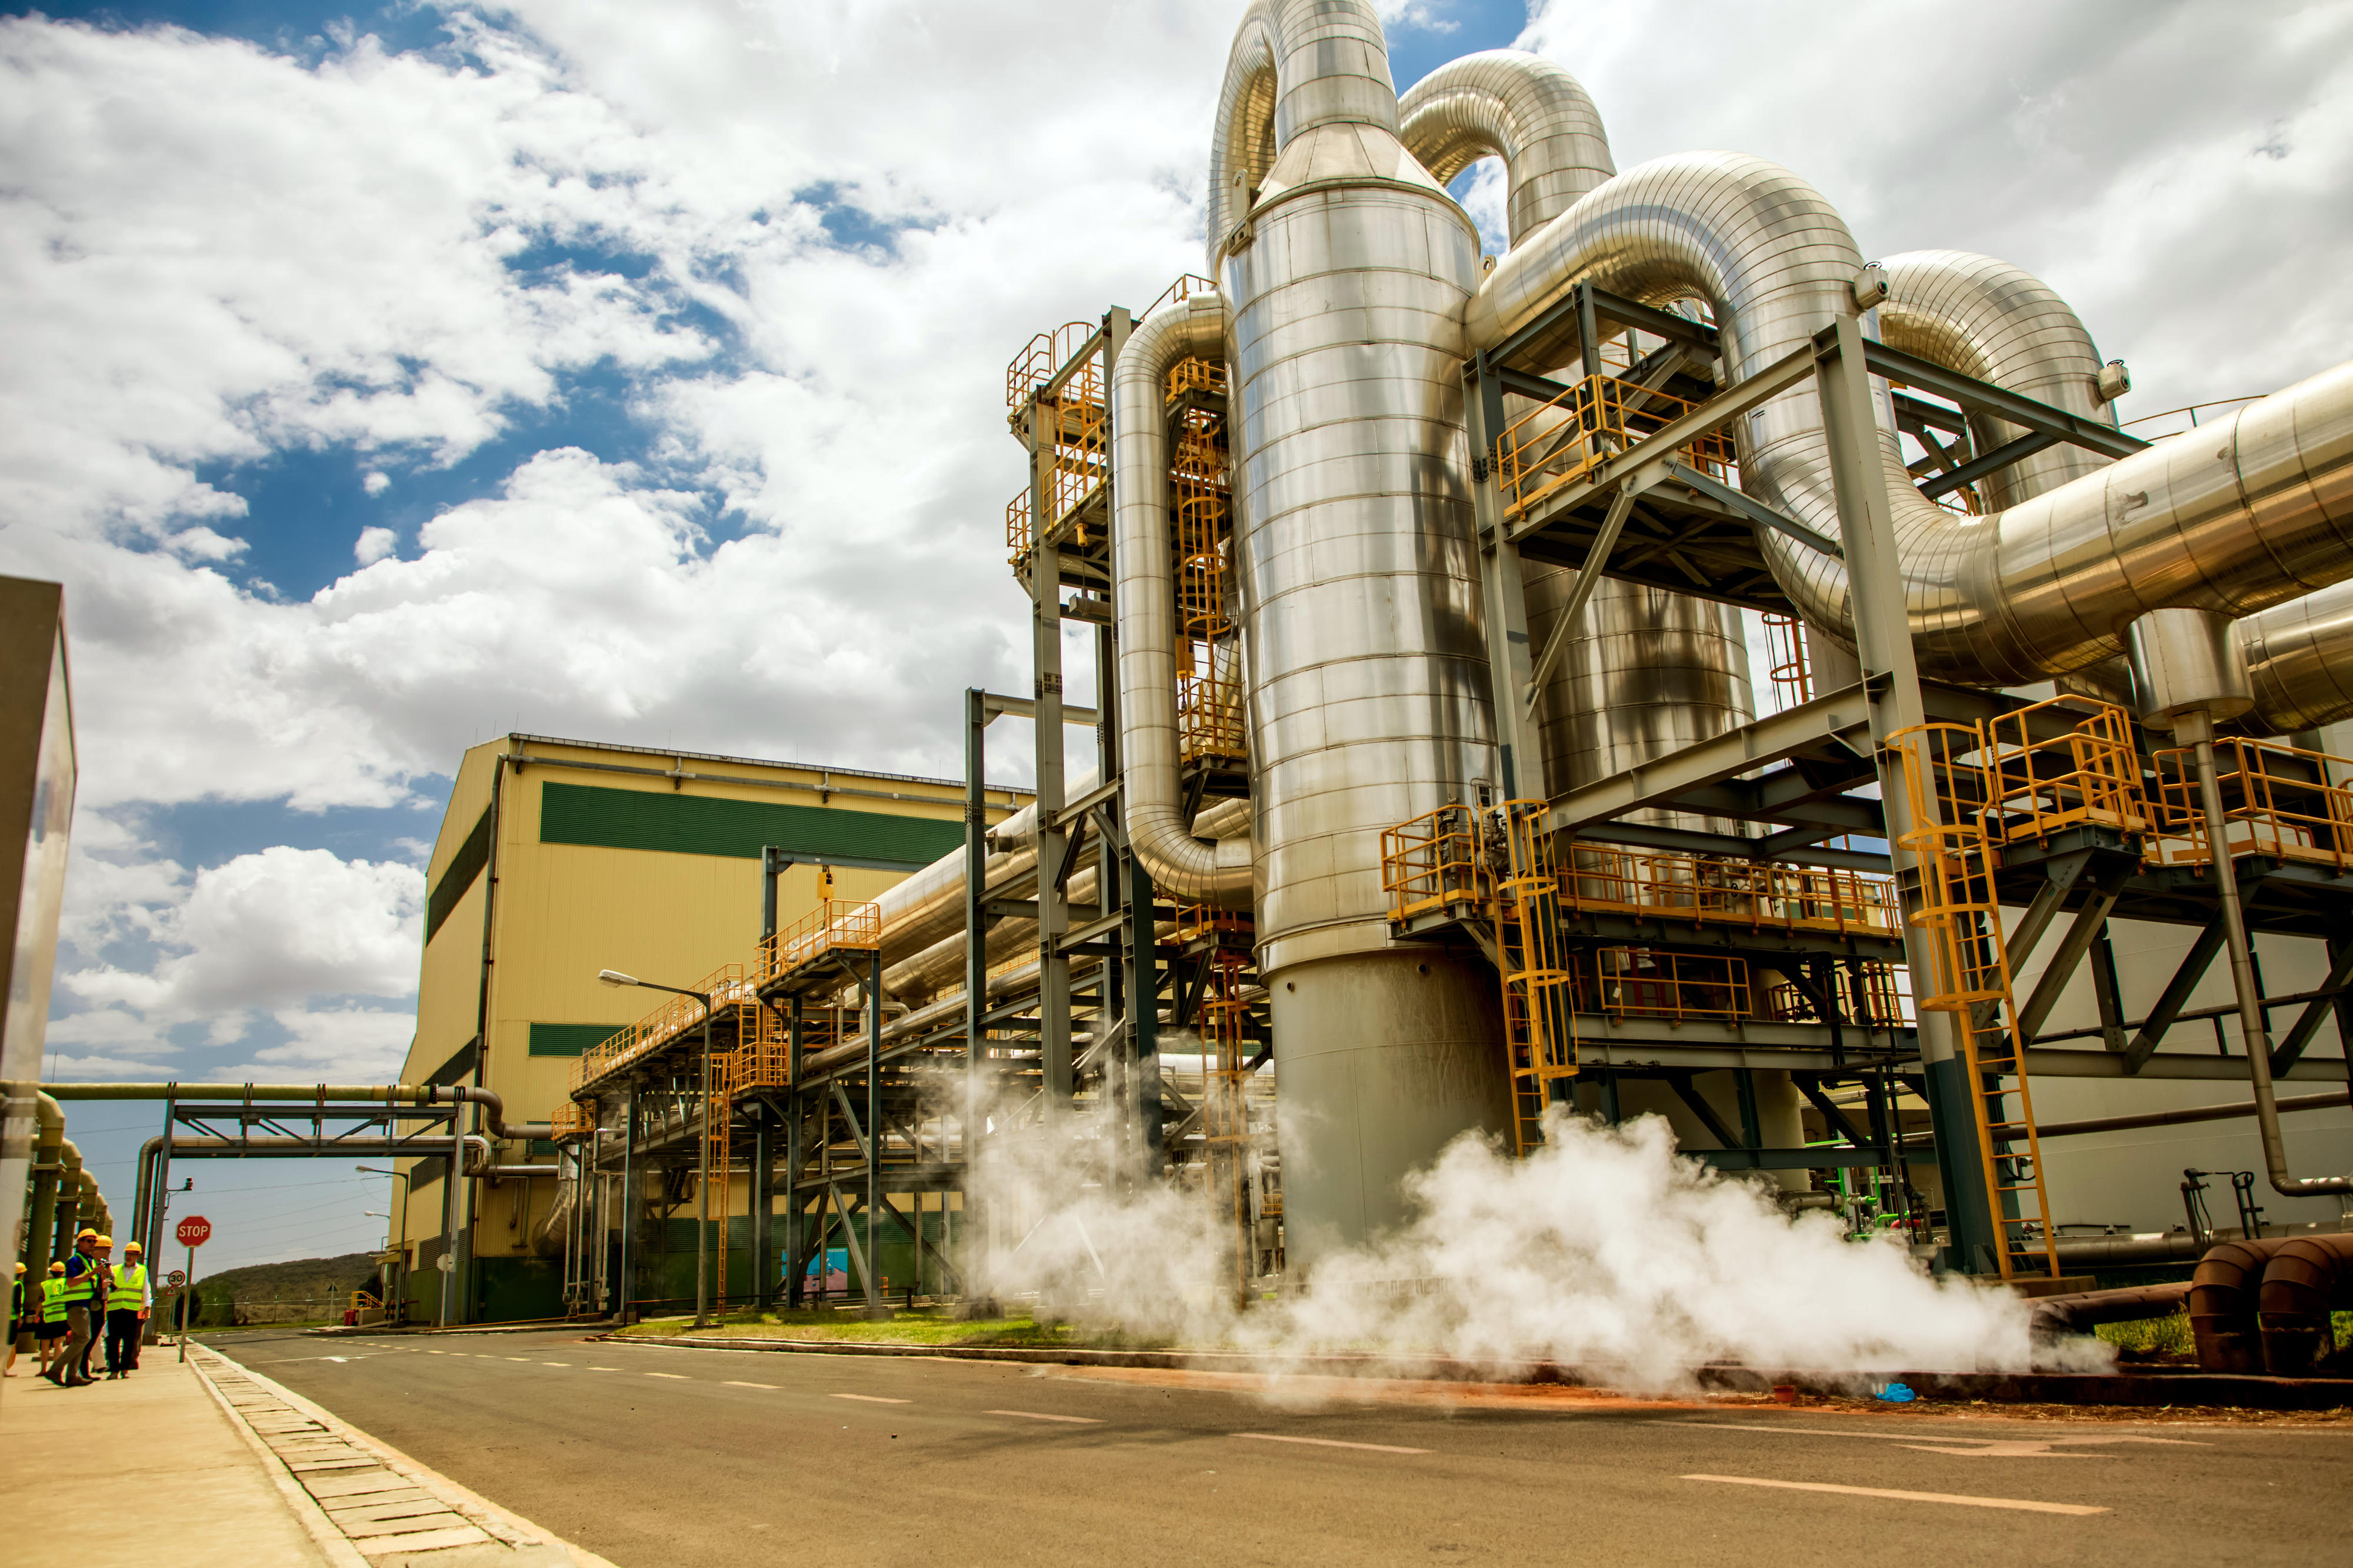 View of the geothermal power station Olkaria in Kenya